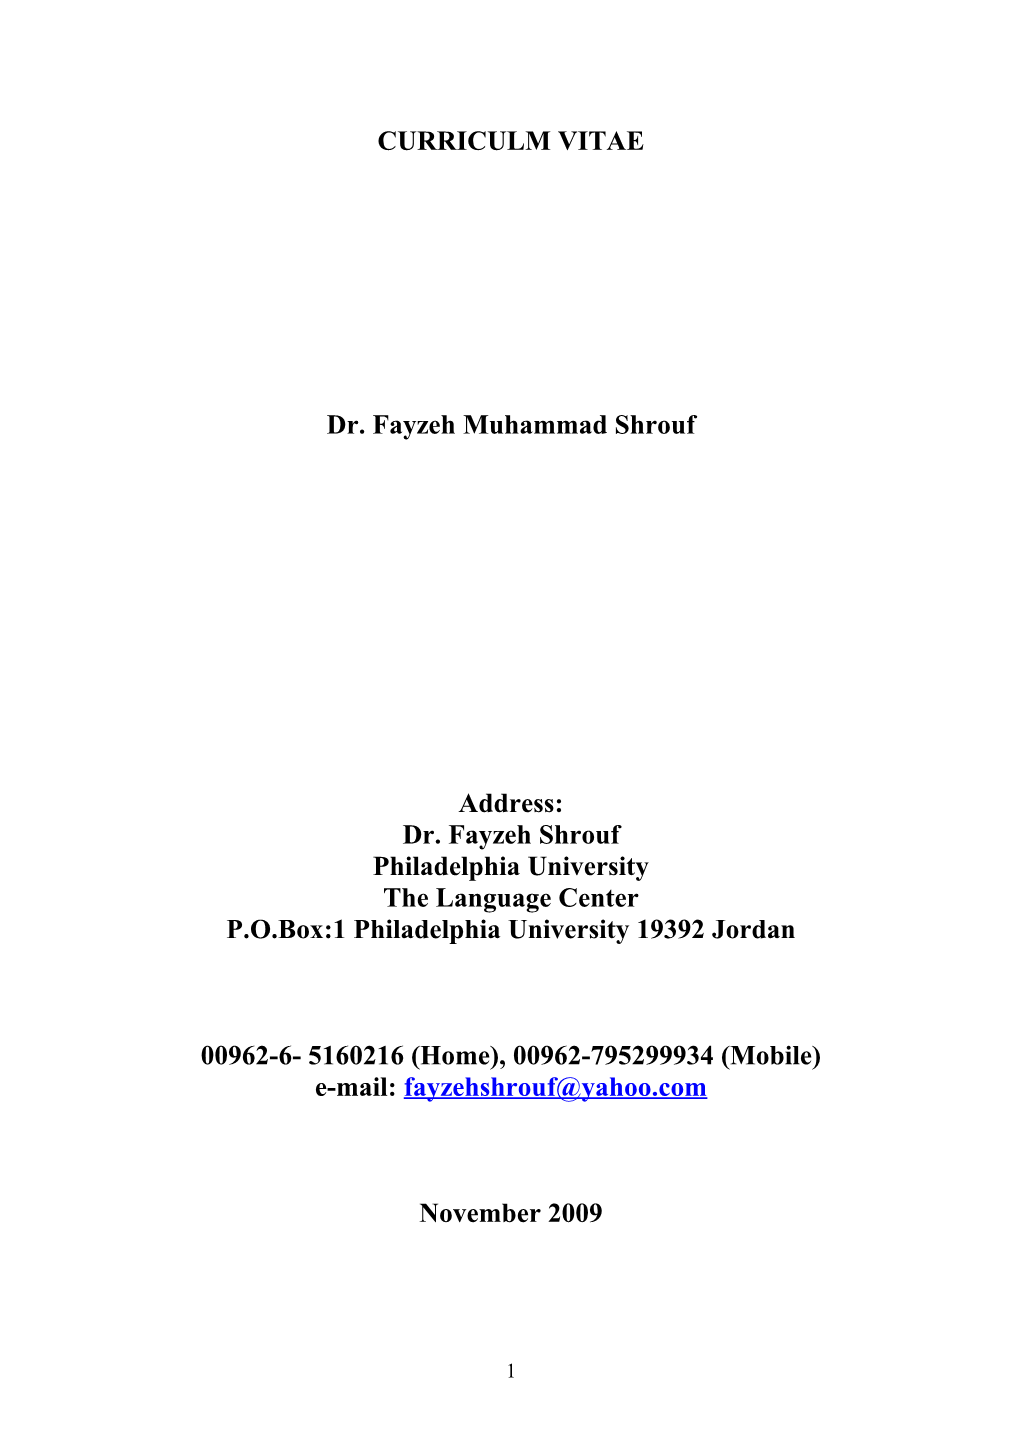 Dr. Fayzeh Muhammad Shrouf